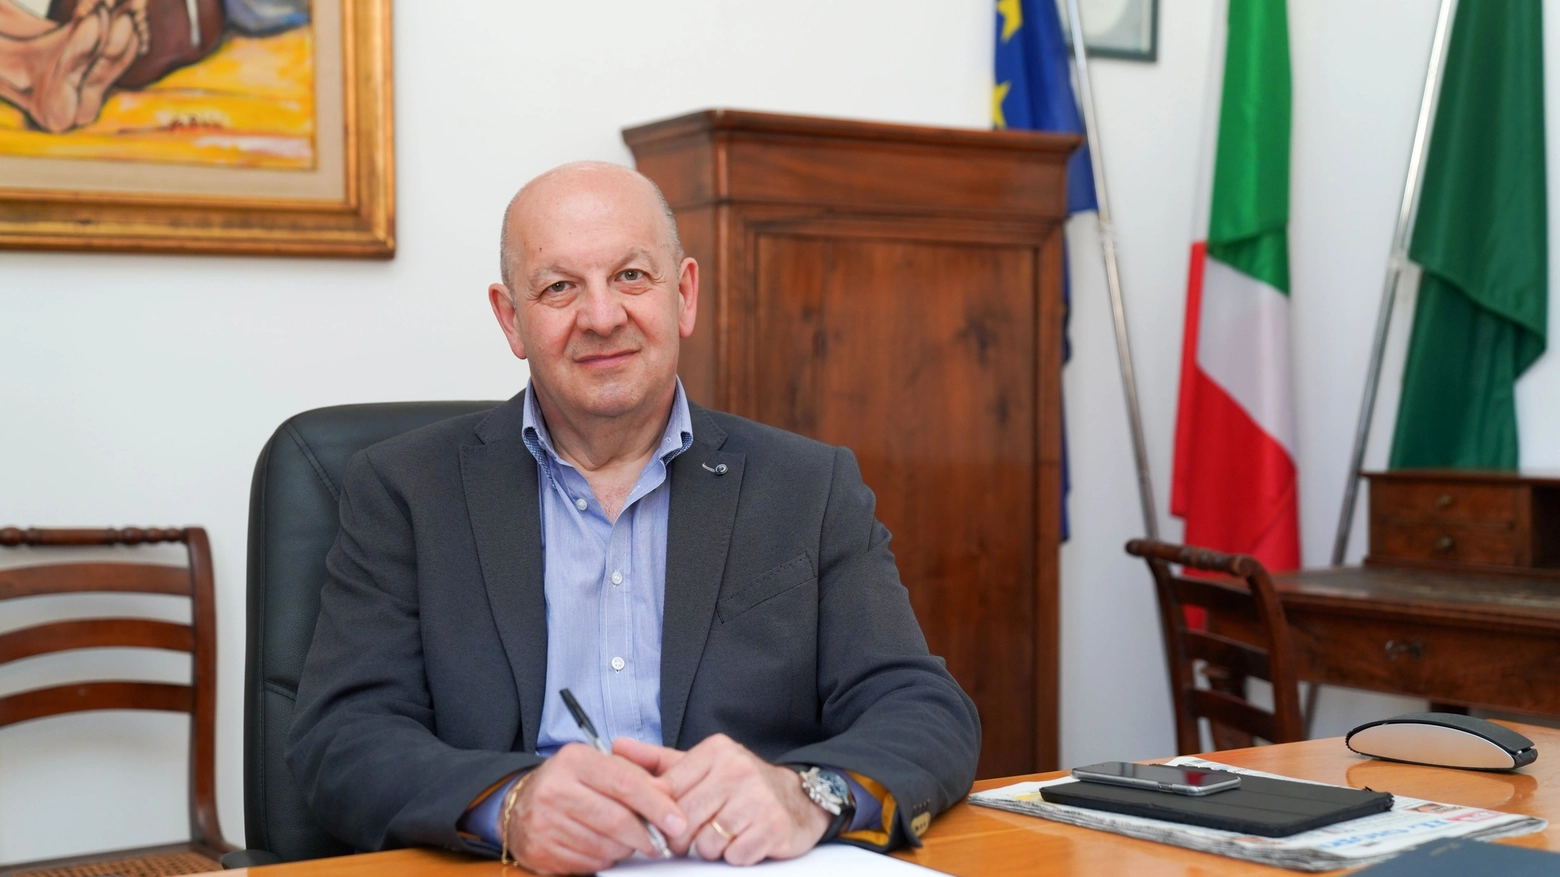 Il sindaco Ezio Casati, sindaco di Paderno Dugnano